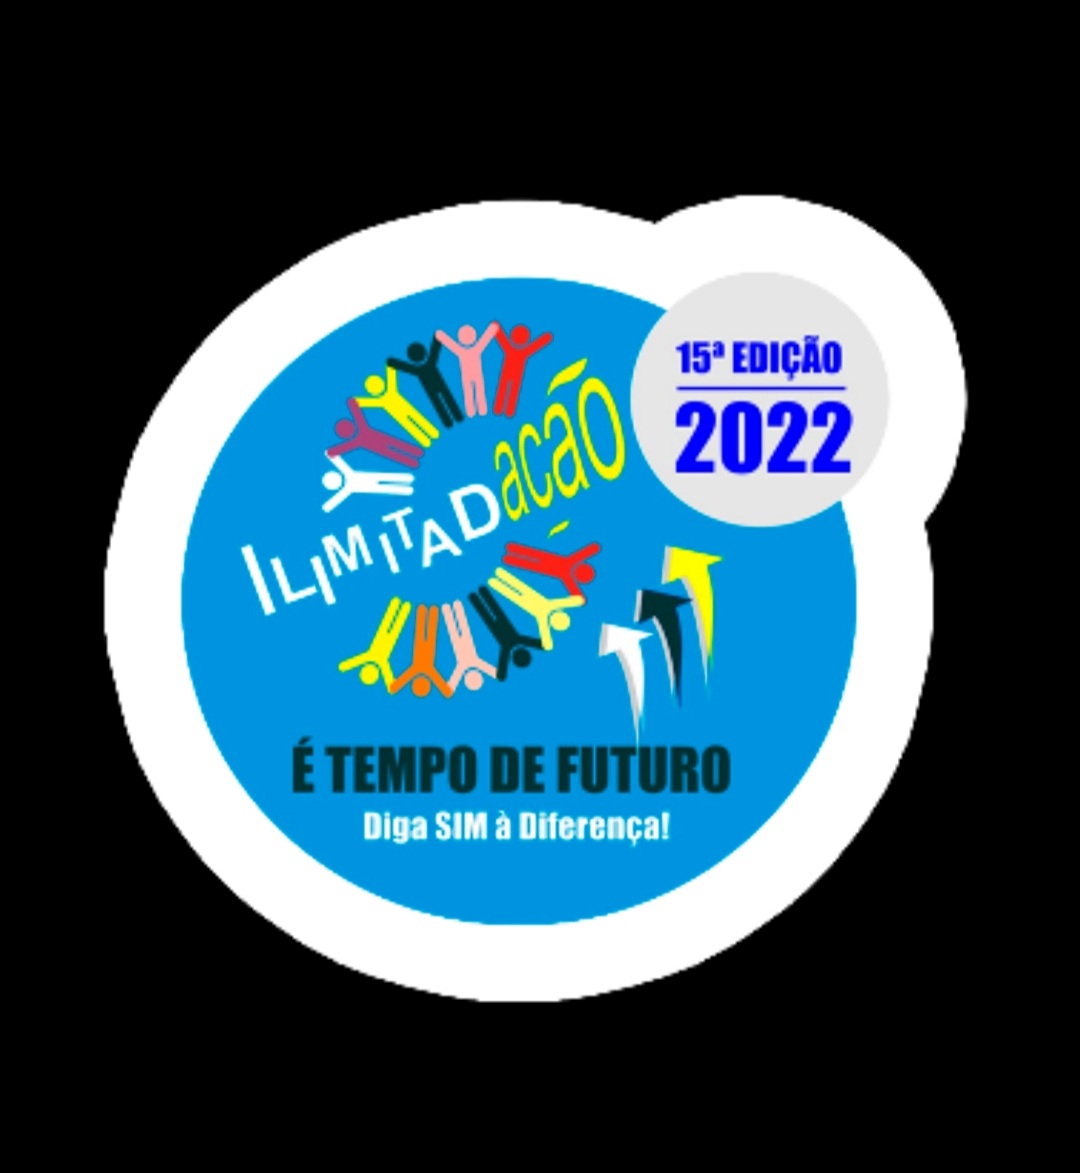 IlimitadAÇÃO 2022